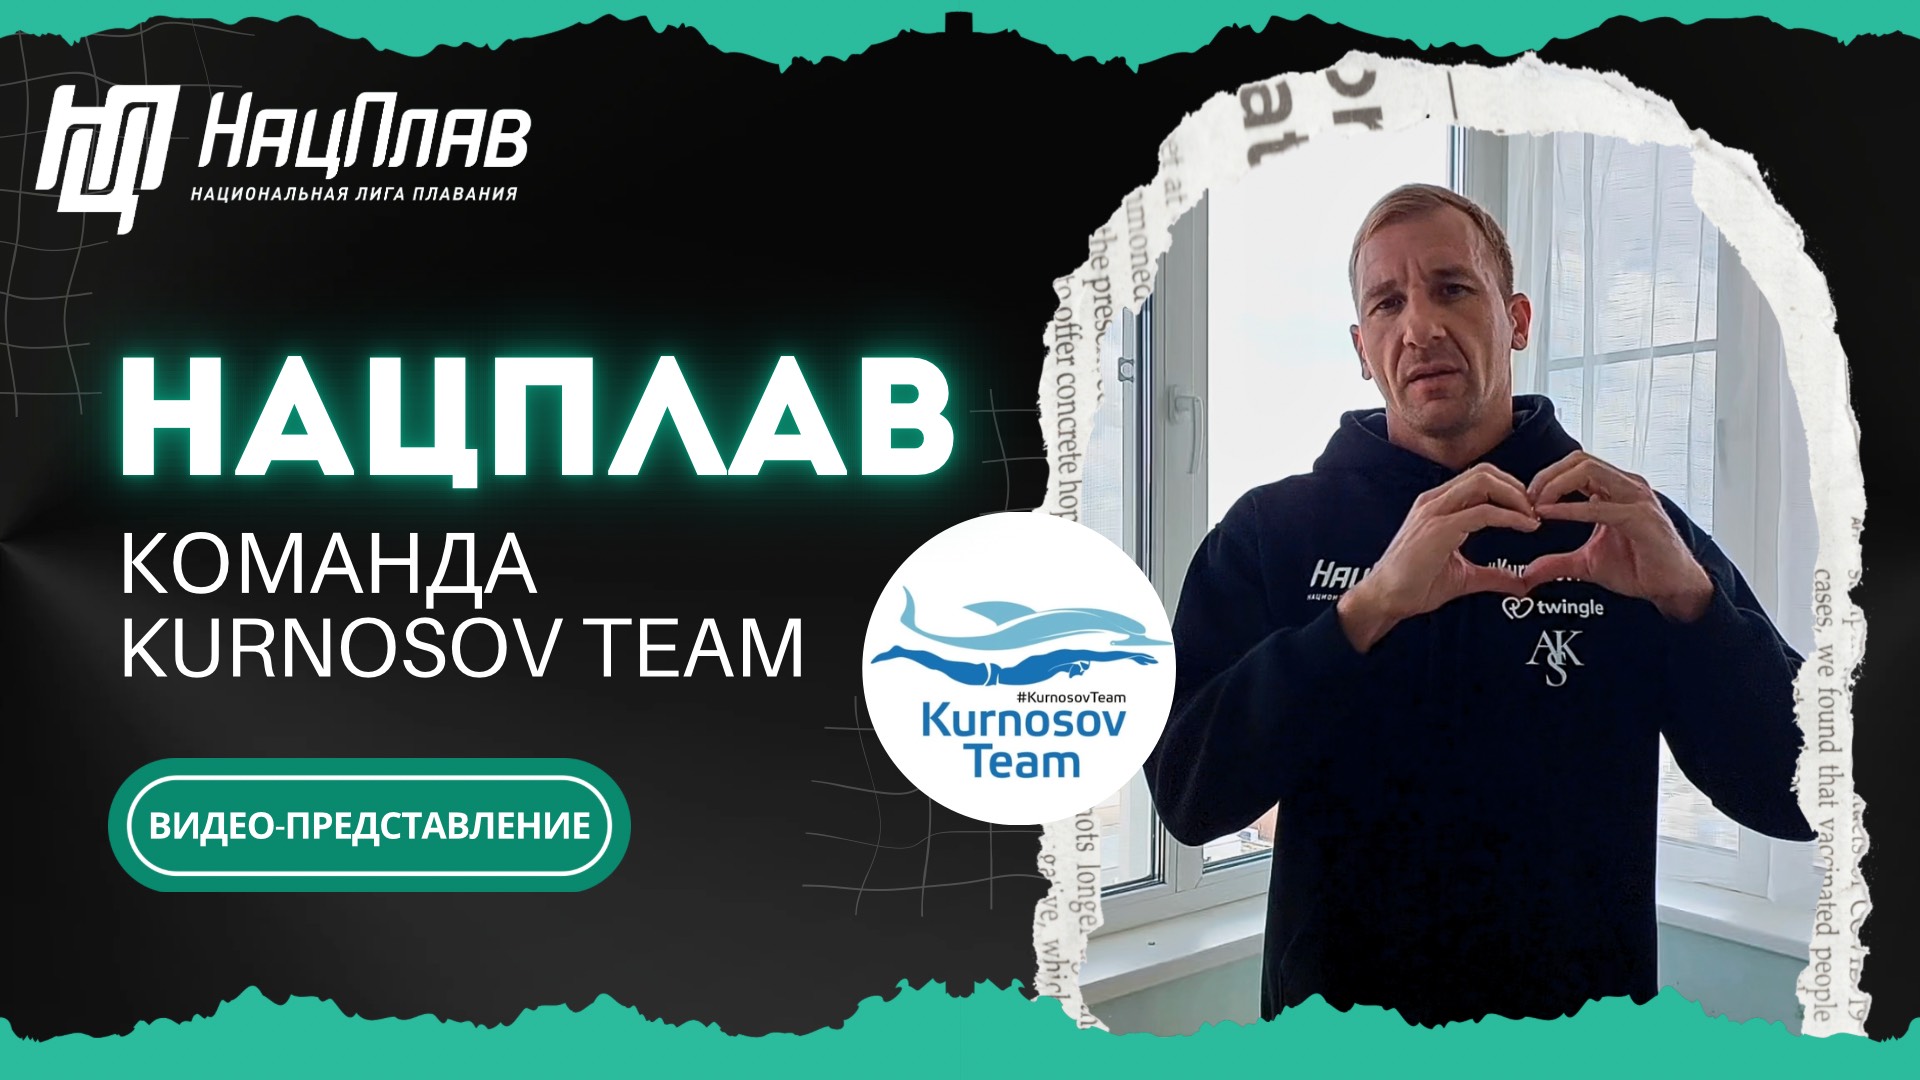 НацПлав: 4 этап, 8 июня. Видео-представление от команды «Kurnosov Team»